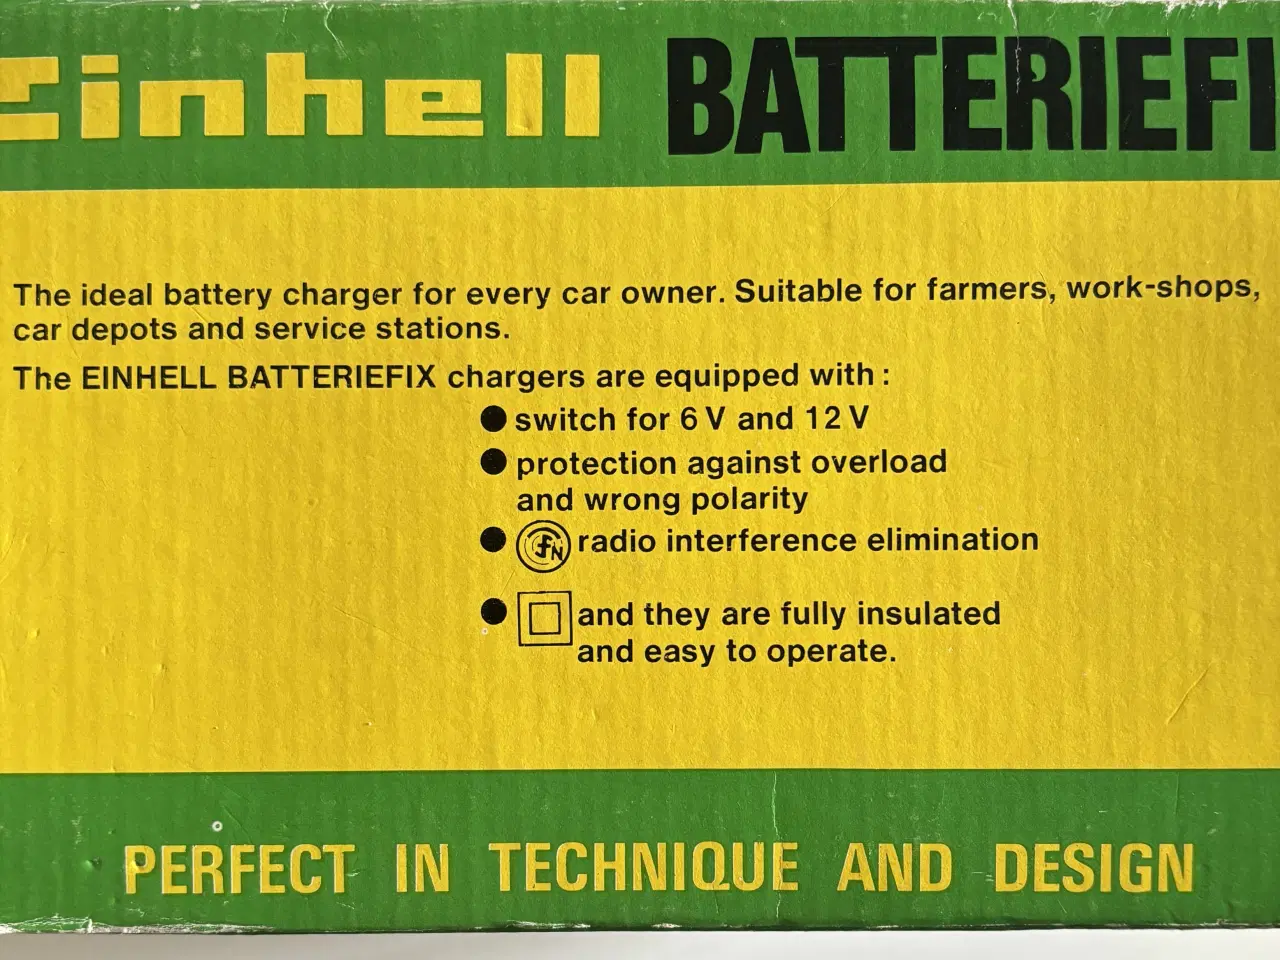 Billede 4 - Batterilader, Einhell batteriefix